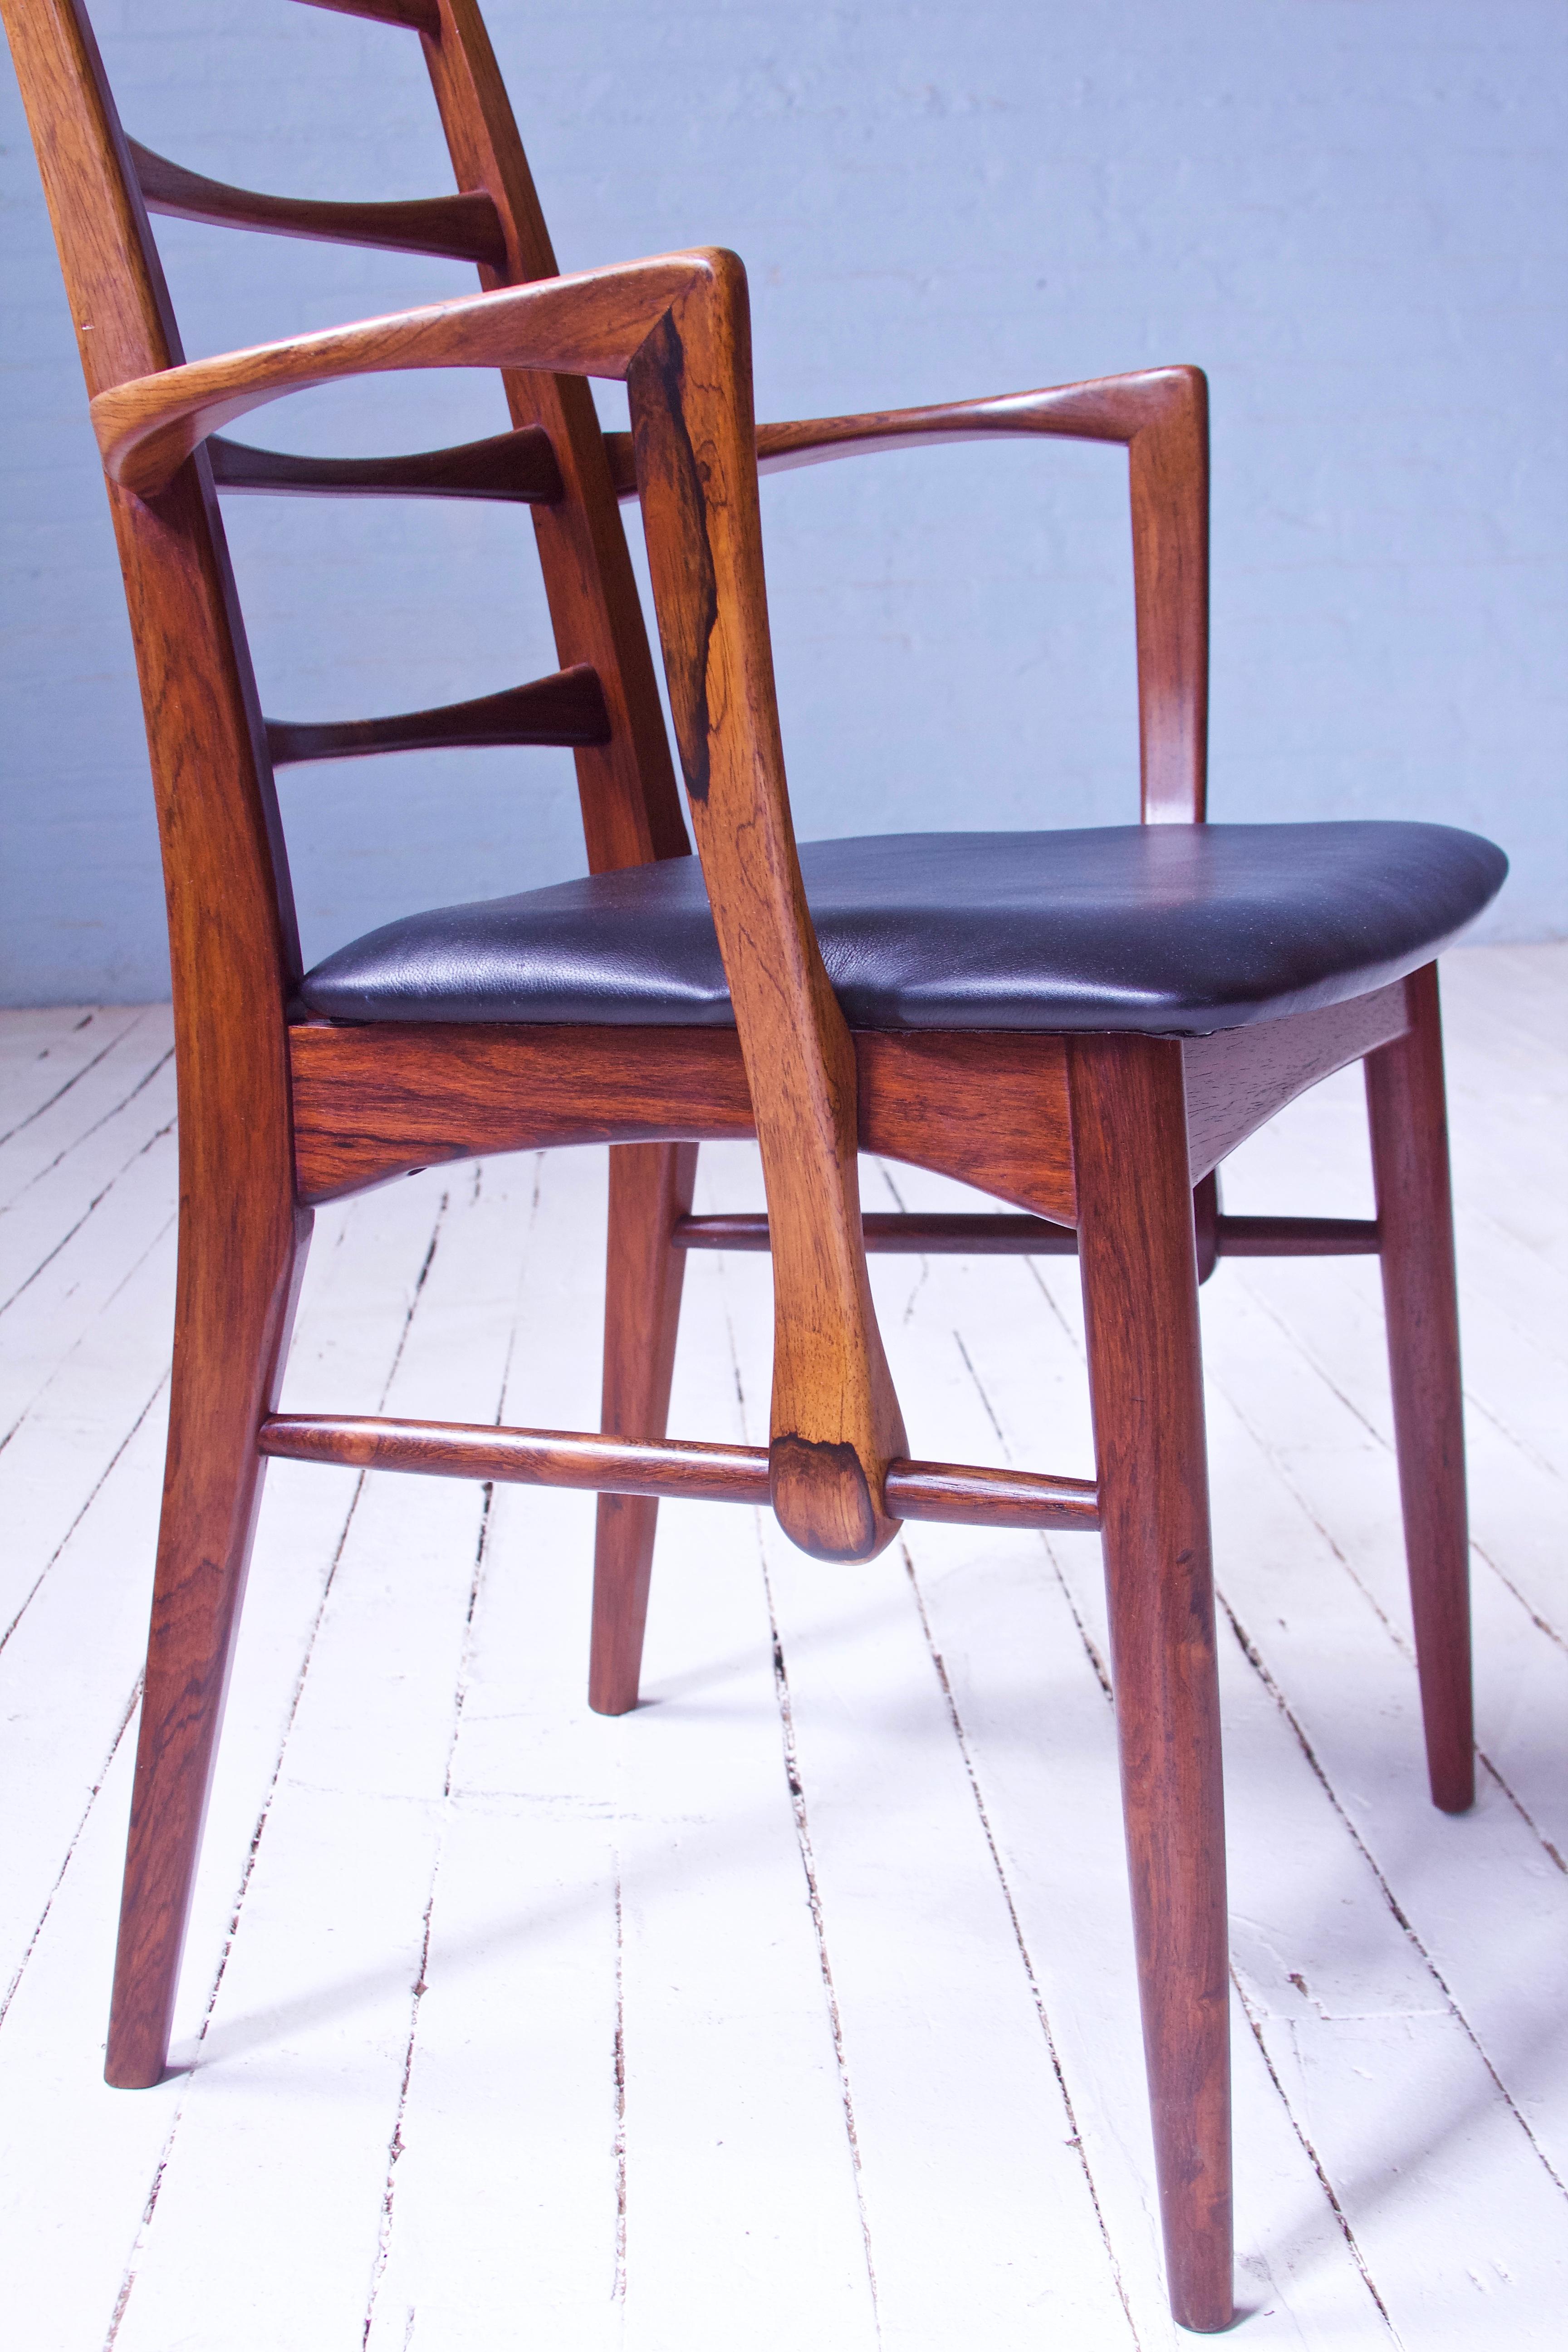 Polished Vintage Pair of 'Lis' Chairs by Niels Koefoed for Koefoeds Møbelfabrik, 1968